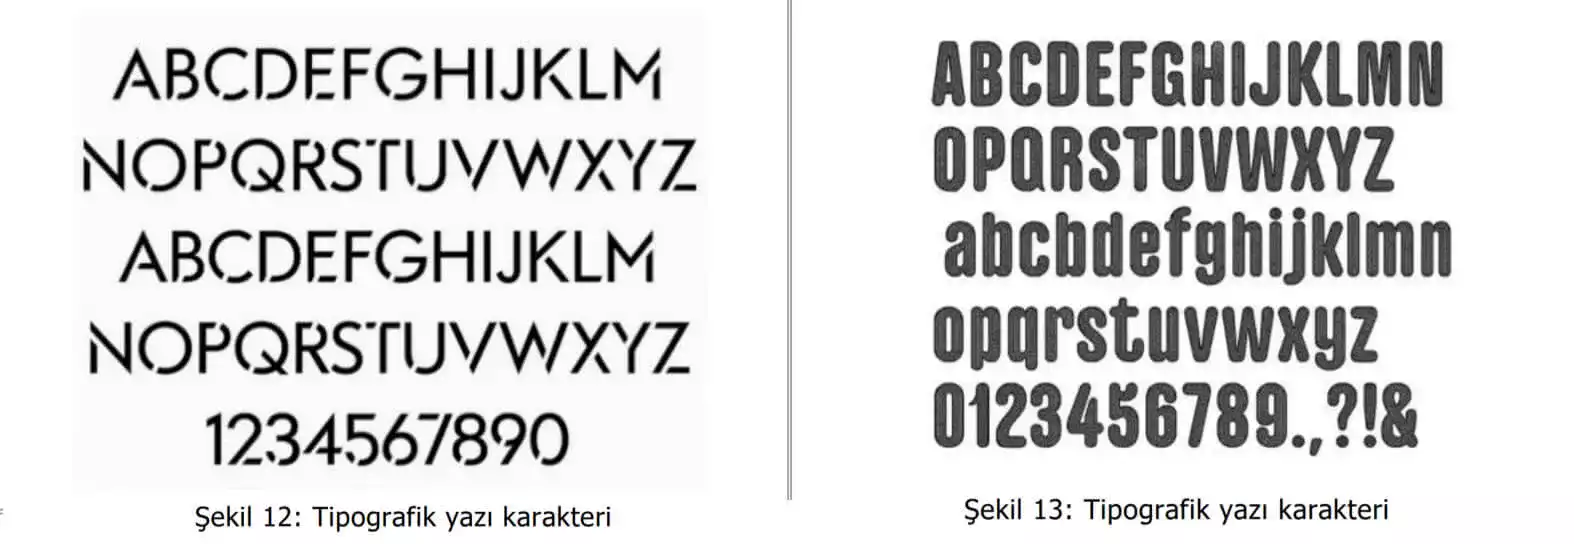 tipografik yazı karakter örnekleri-mugla patent